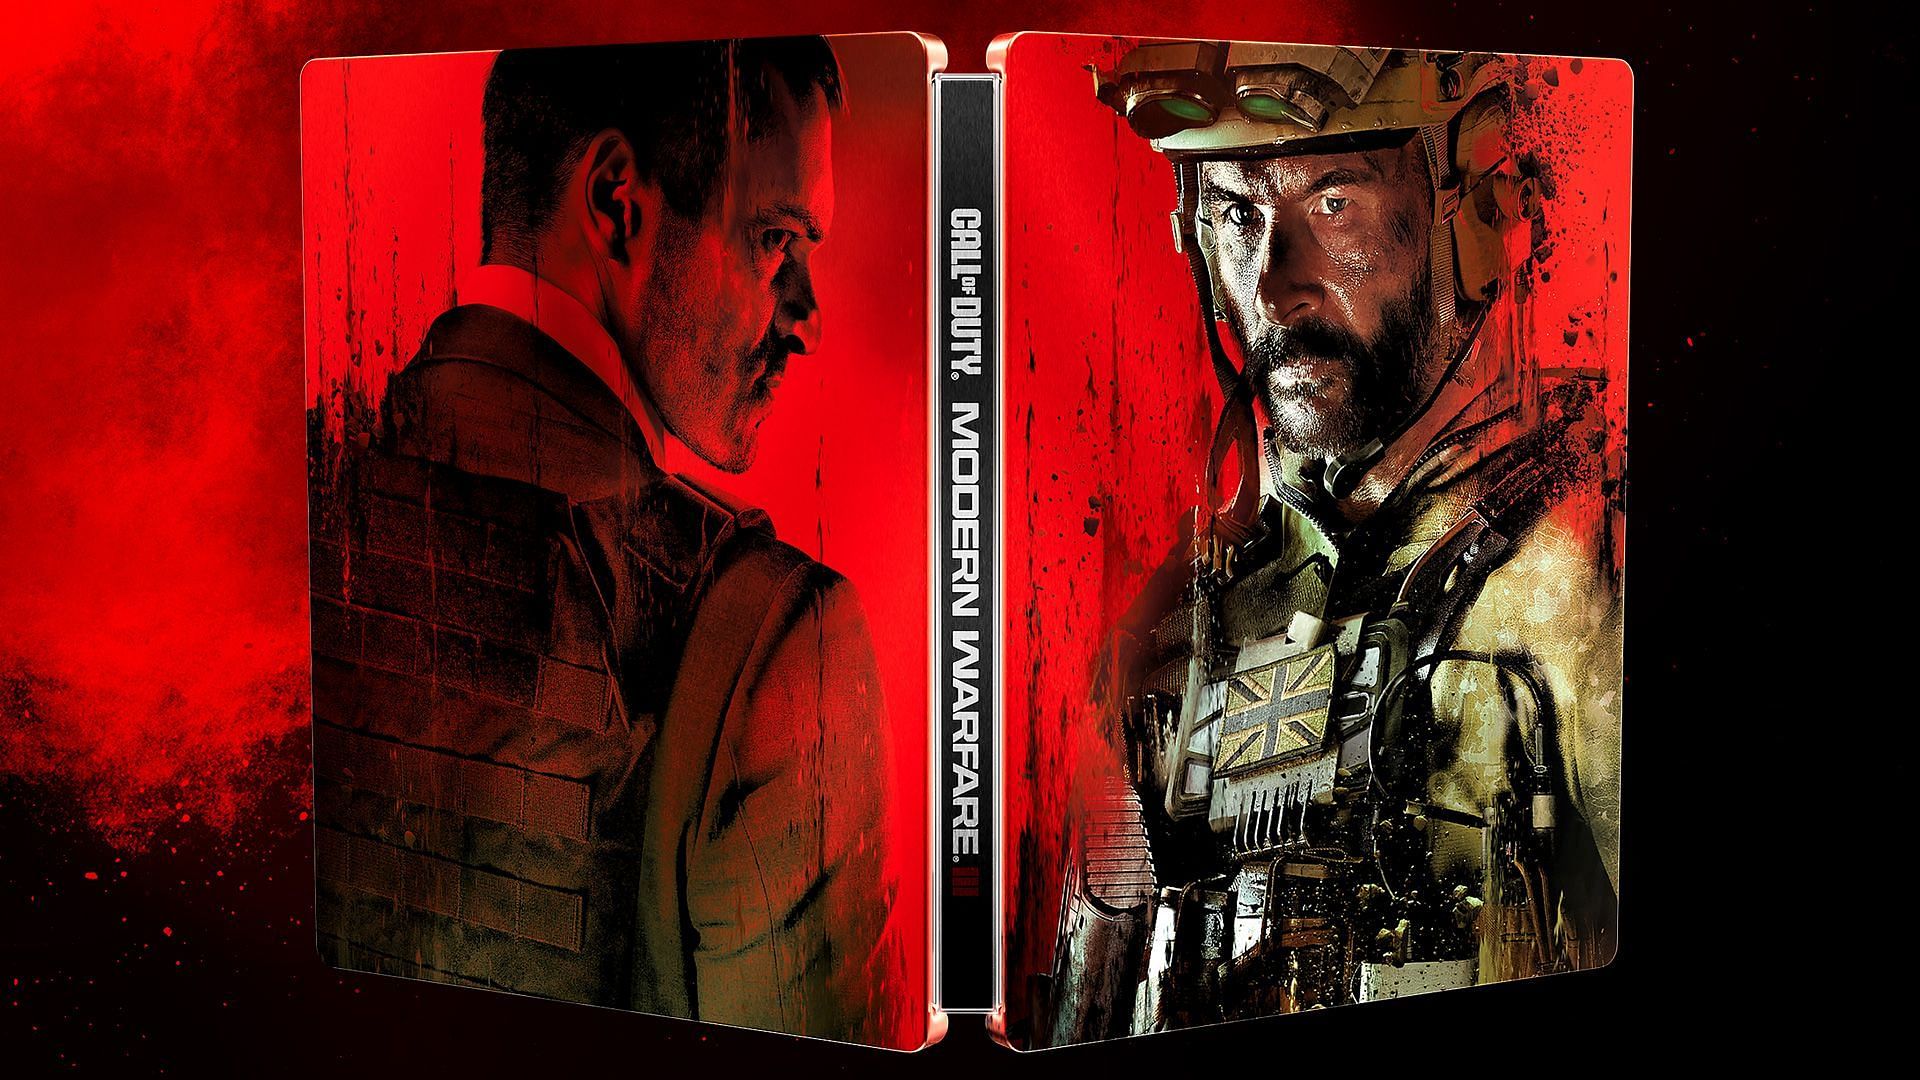 Download Xbox Call of Duty Modern Warfare Digital Standard Edition Xbox One  Digital Code